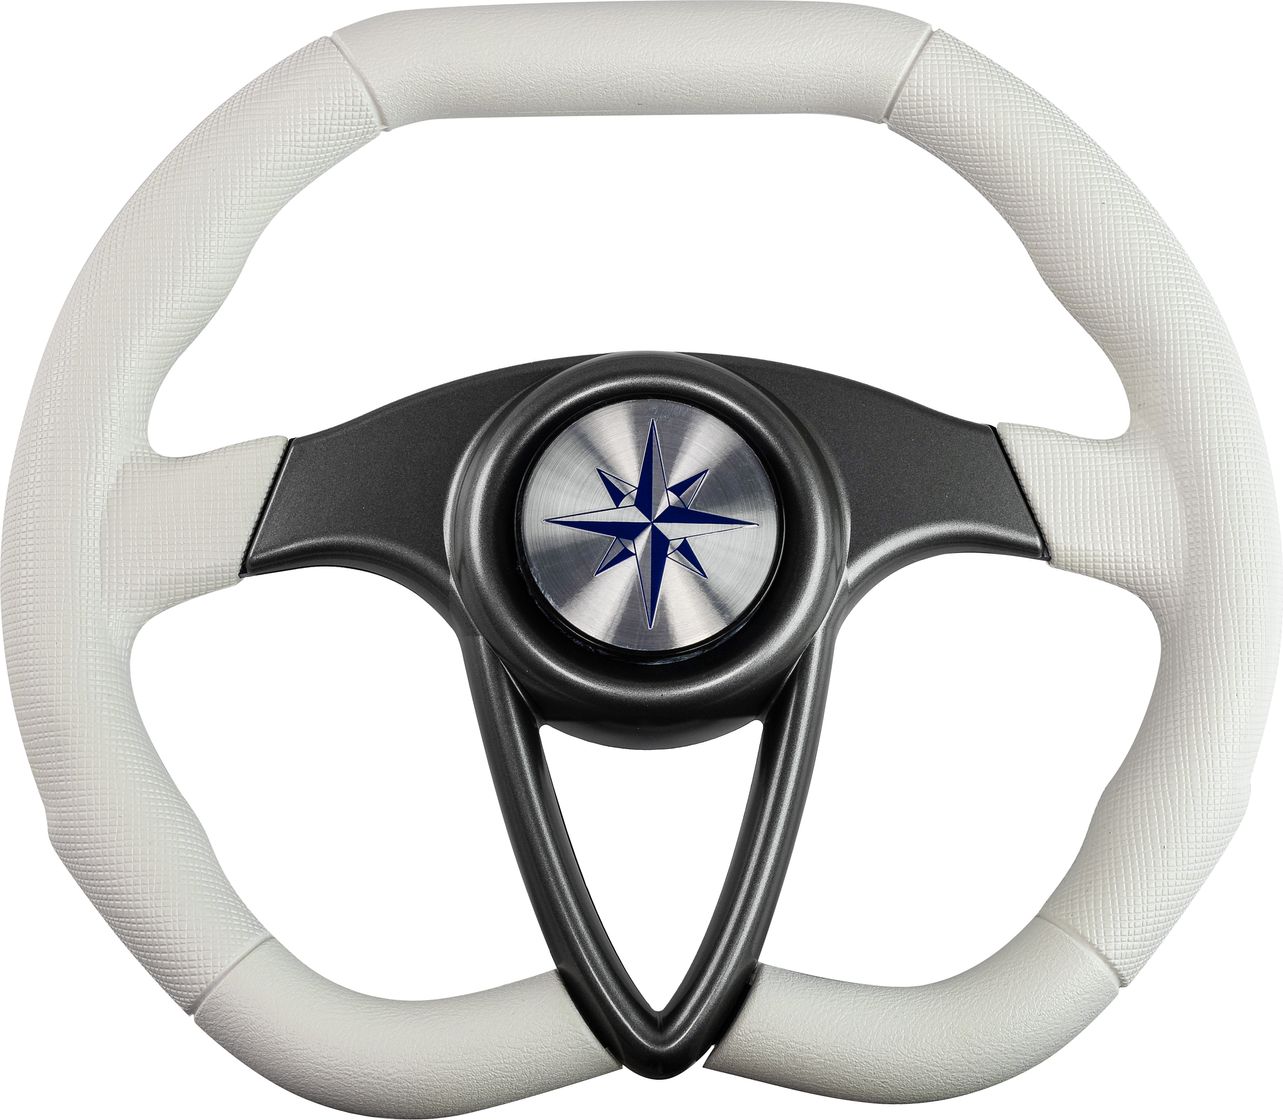 Рулевое колесо BARRACUDA обод белый, спицы серебряные д. 350 мм VN135002-08 рулевое колесо manta обод белый спицы серебряные д 355 мм vn70551 08